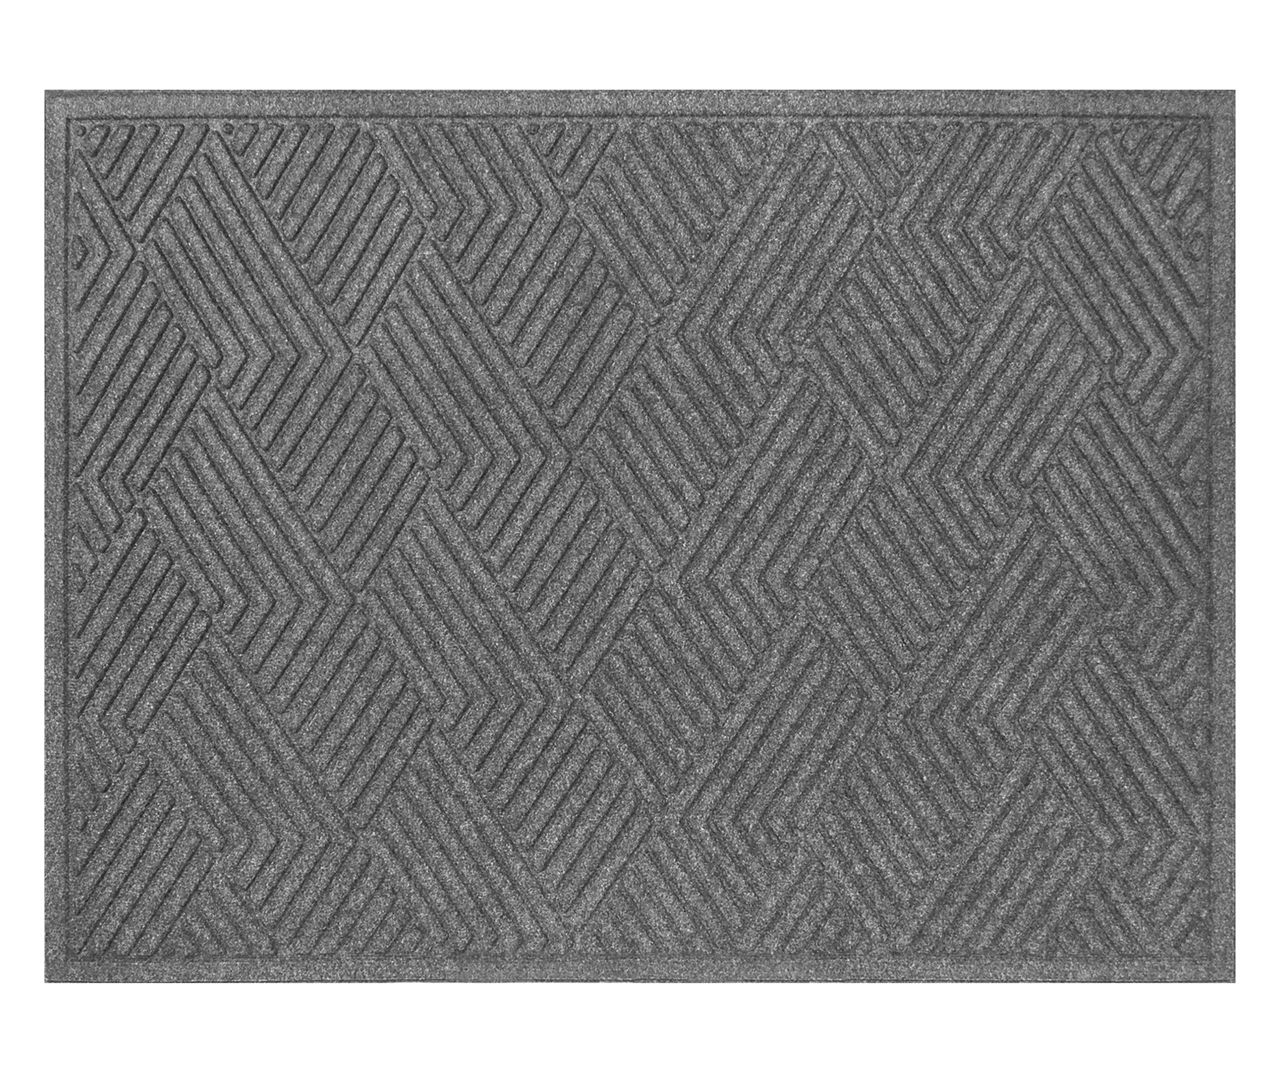 Vanguard Smoke Geometric Texture Doormat, (3' x 4')